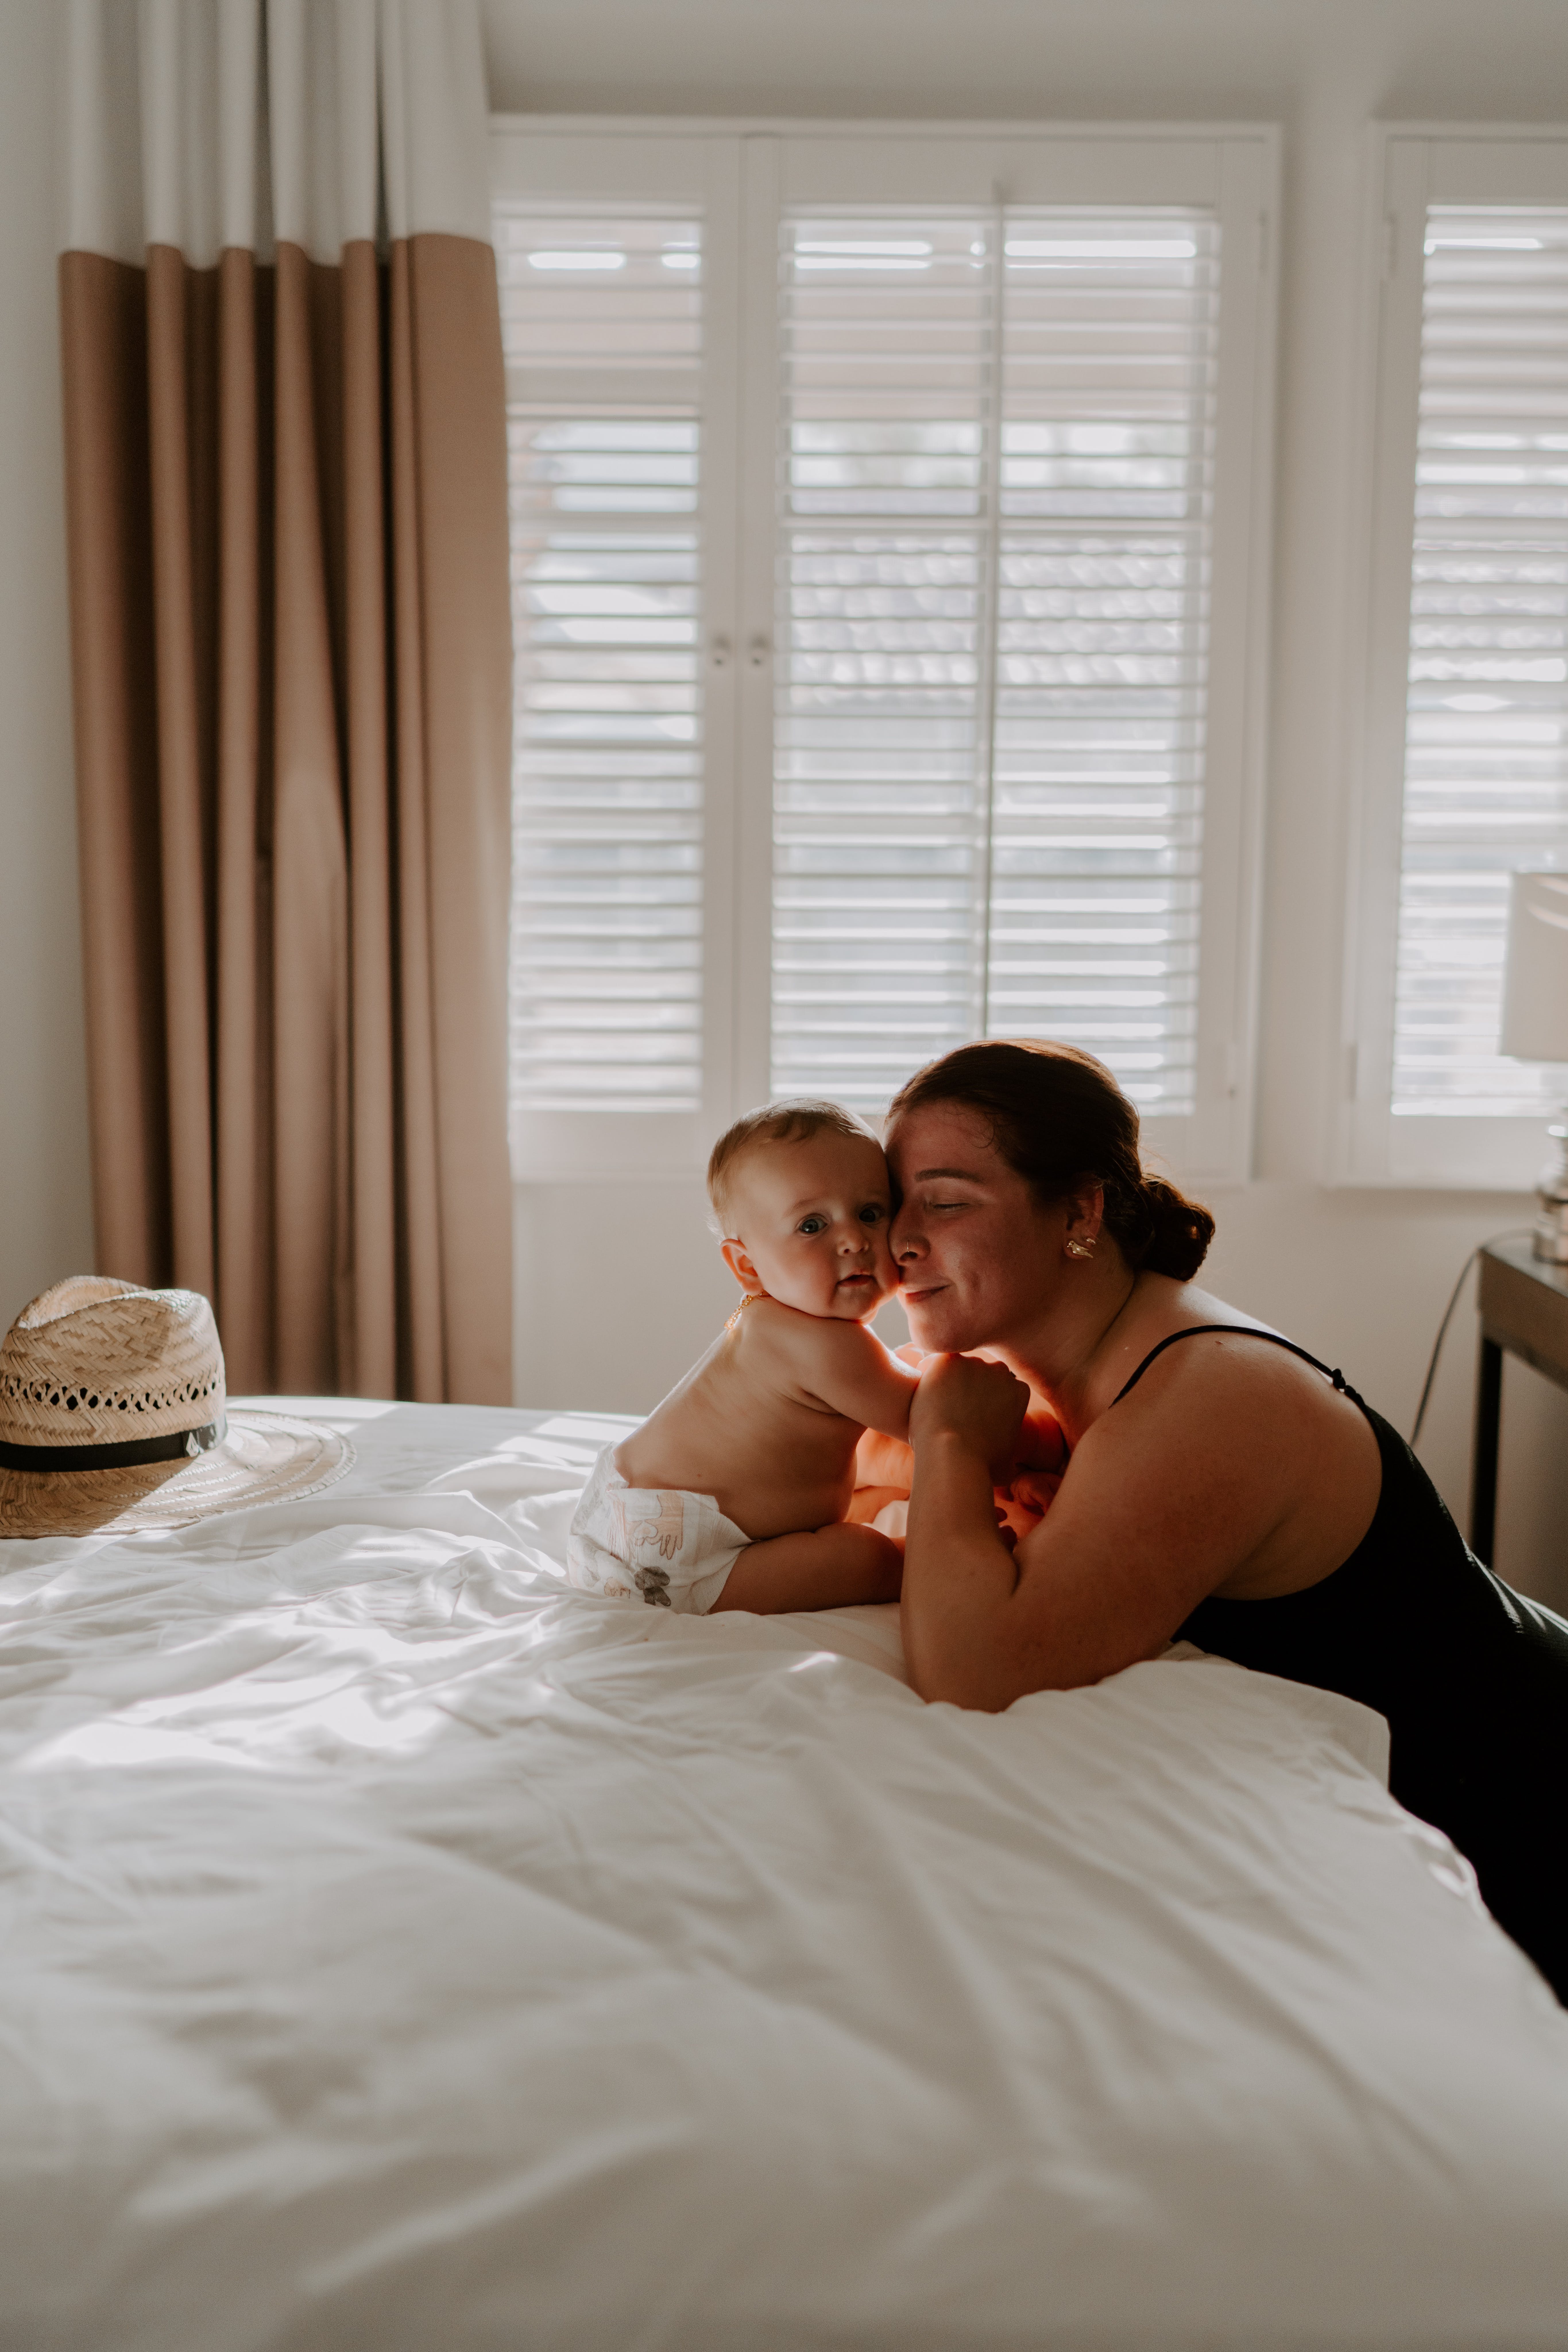 Une femme avec un bébé dans son lit | Source : Pexels